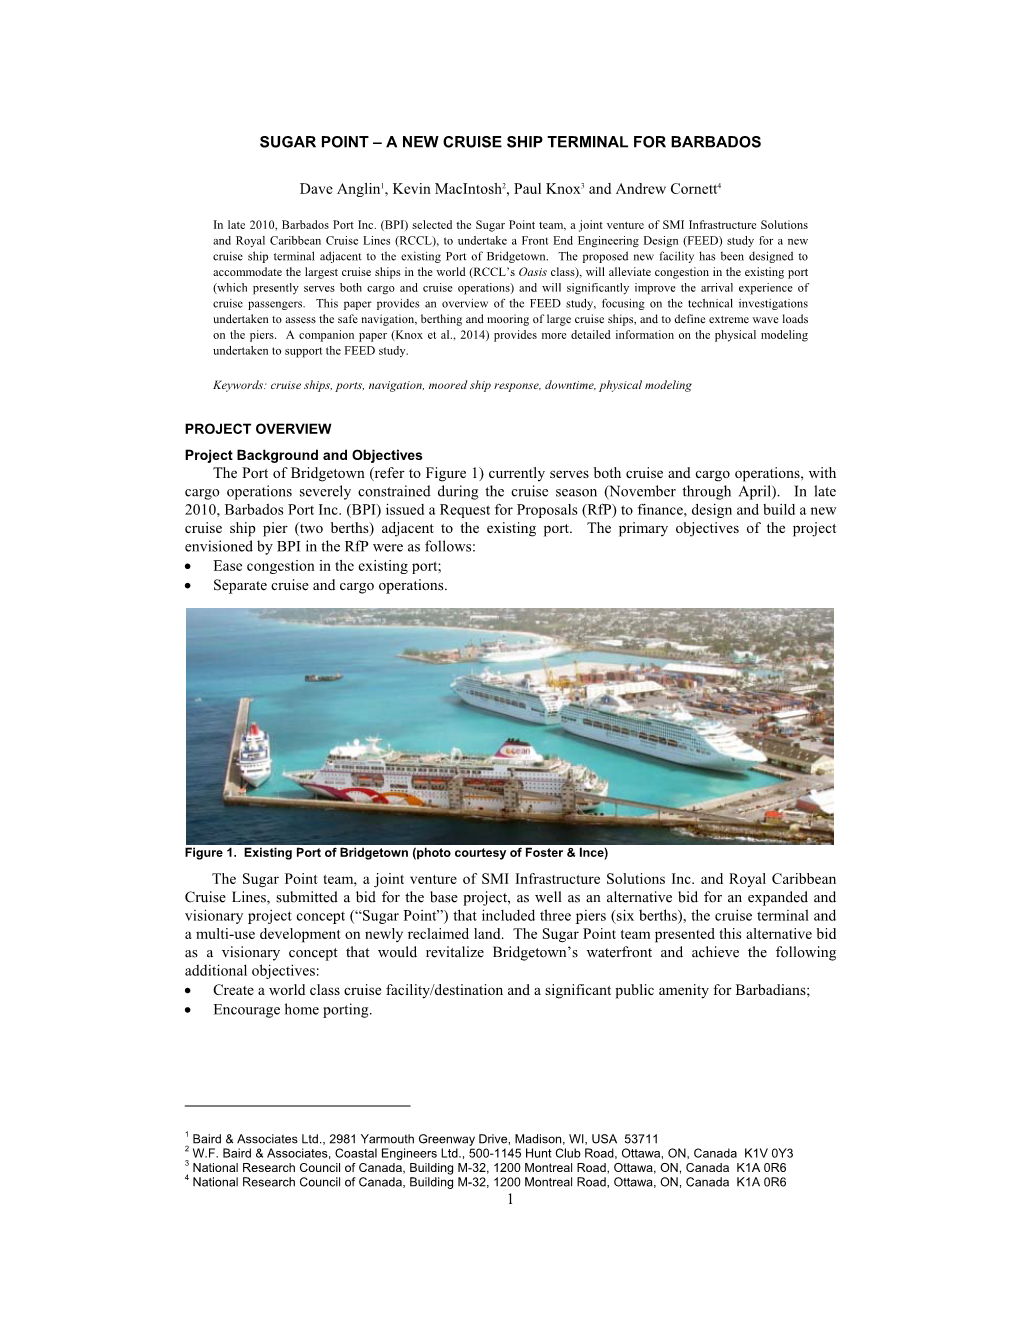 1 Sugar Point – a New Cruise Ship Terminal for Barbados